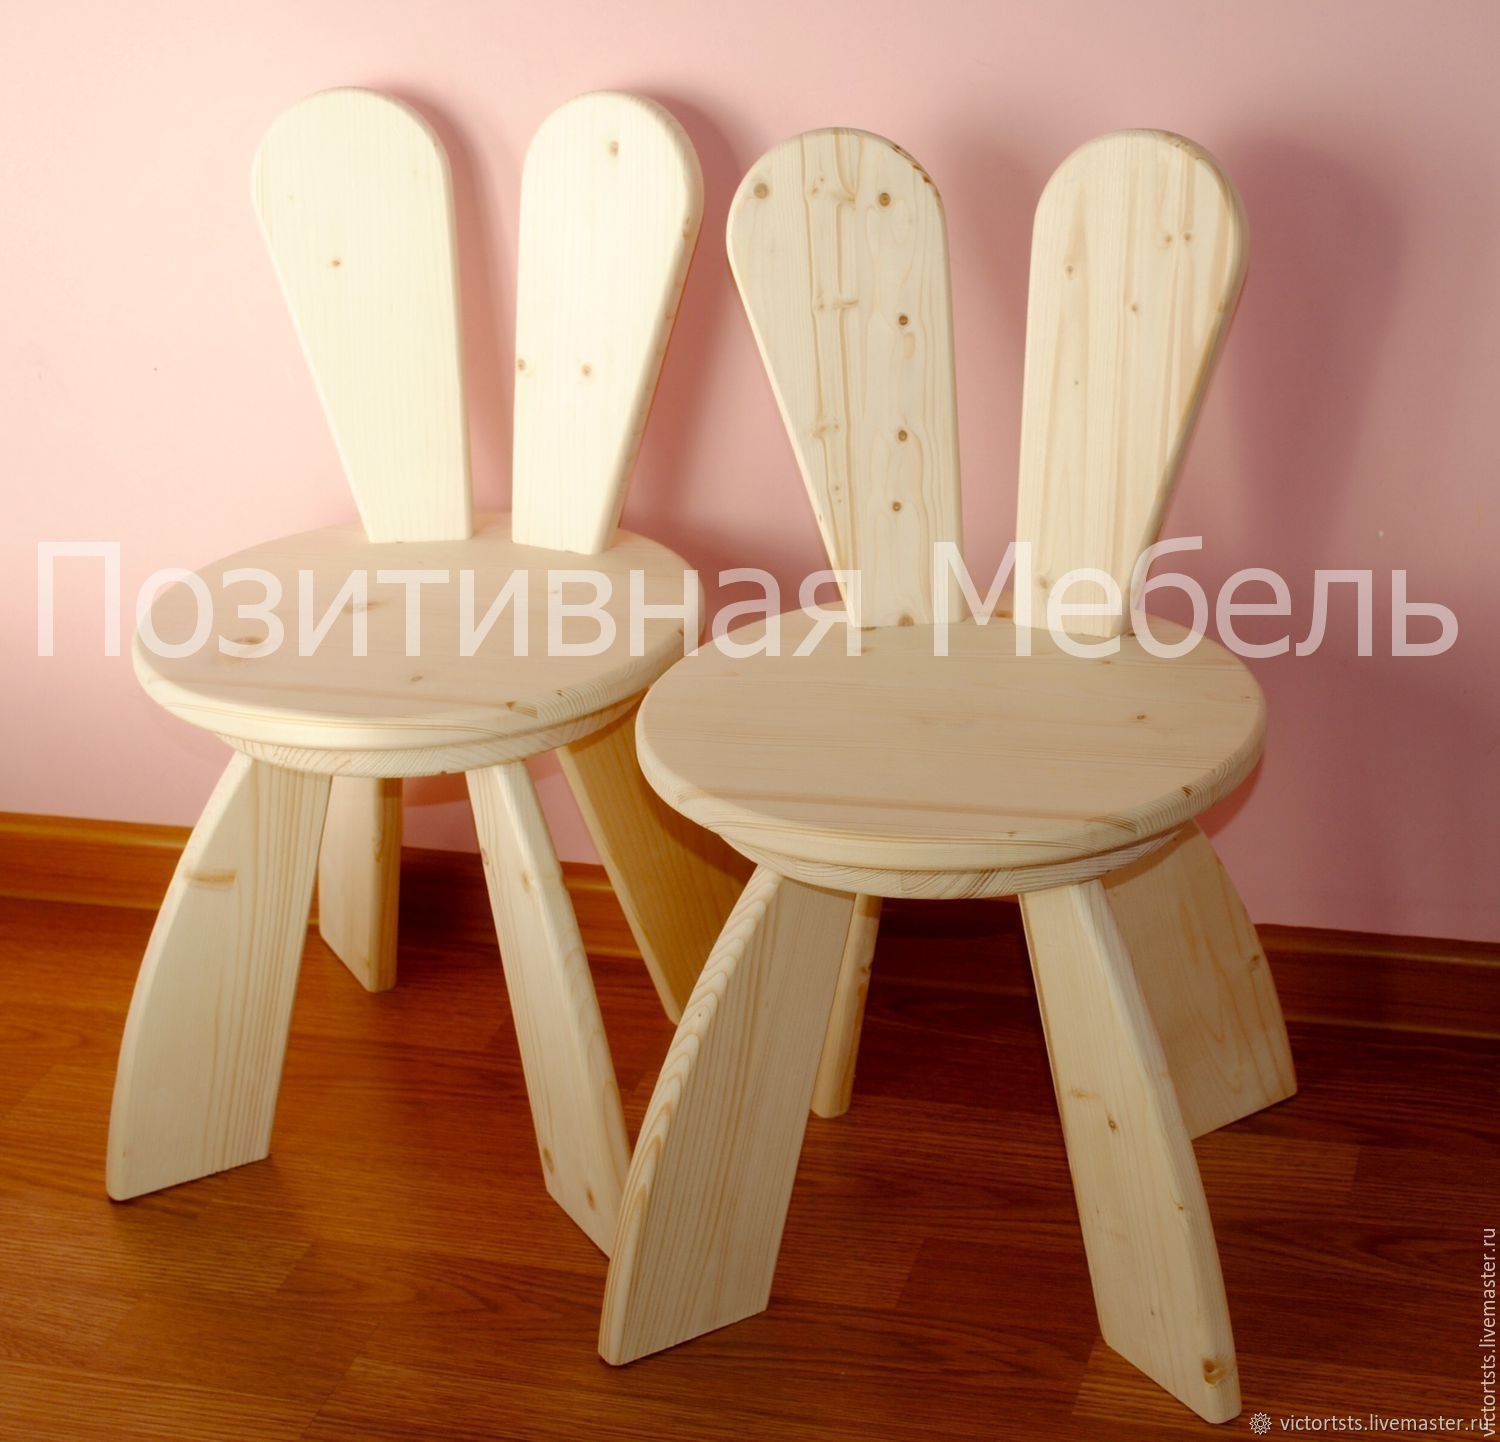 Детские столы и стульчики из фанеры